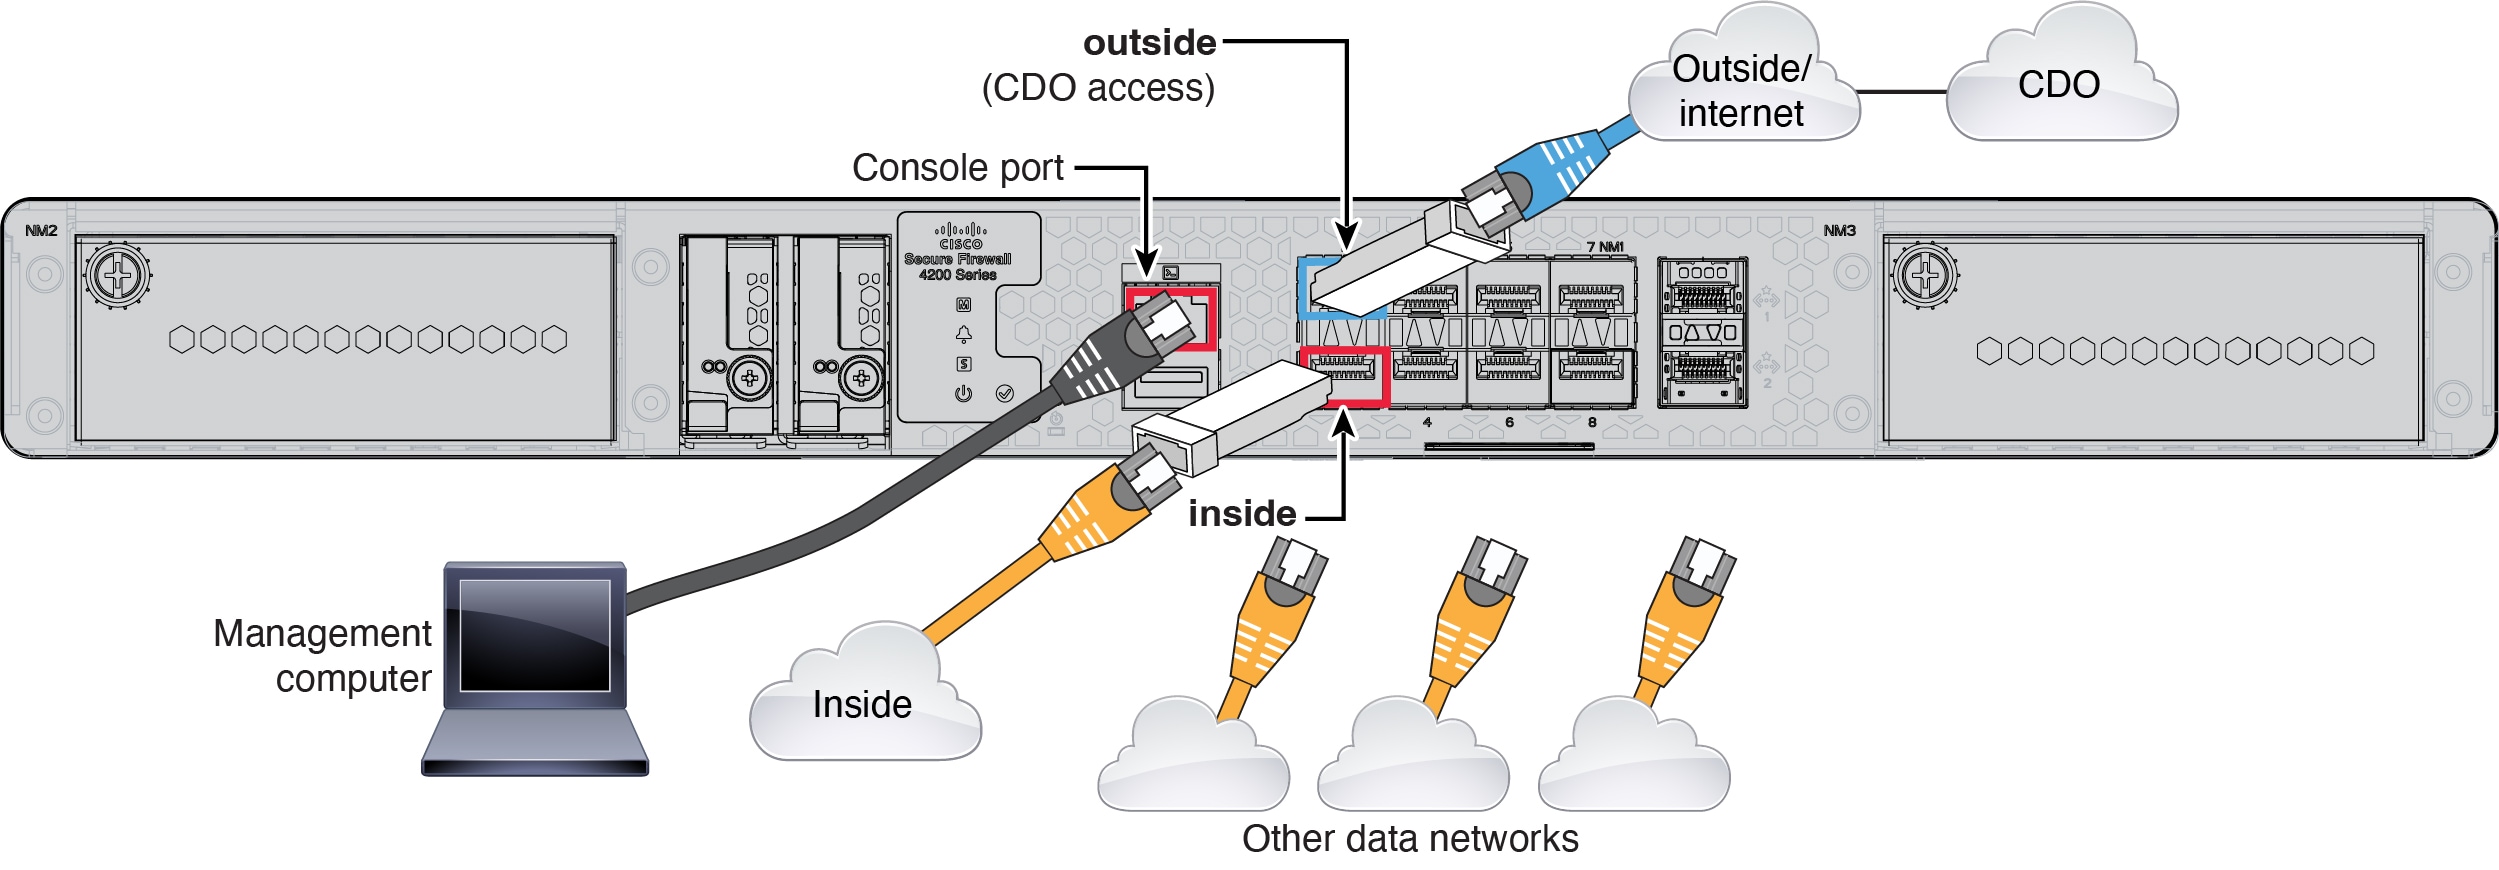 Cisco Secure Firewall 4200 のケーブル接続